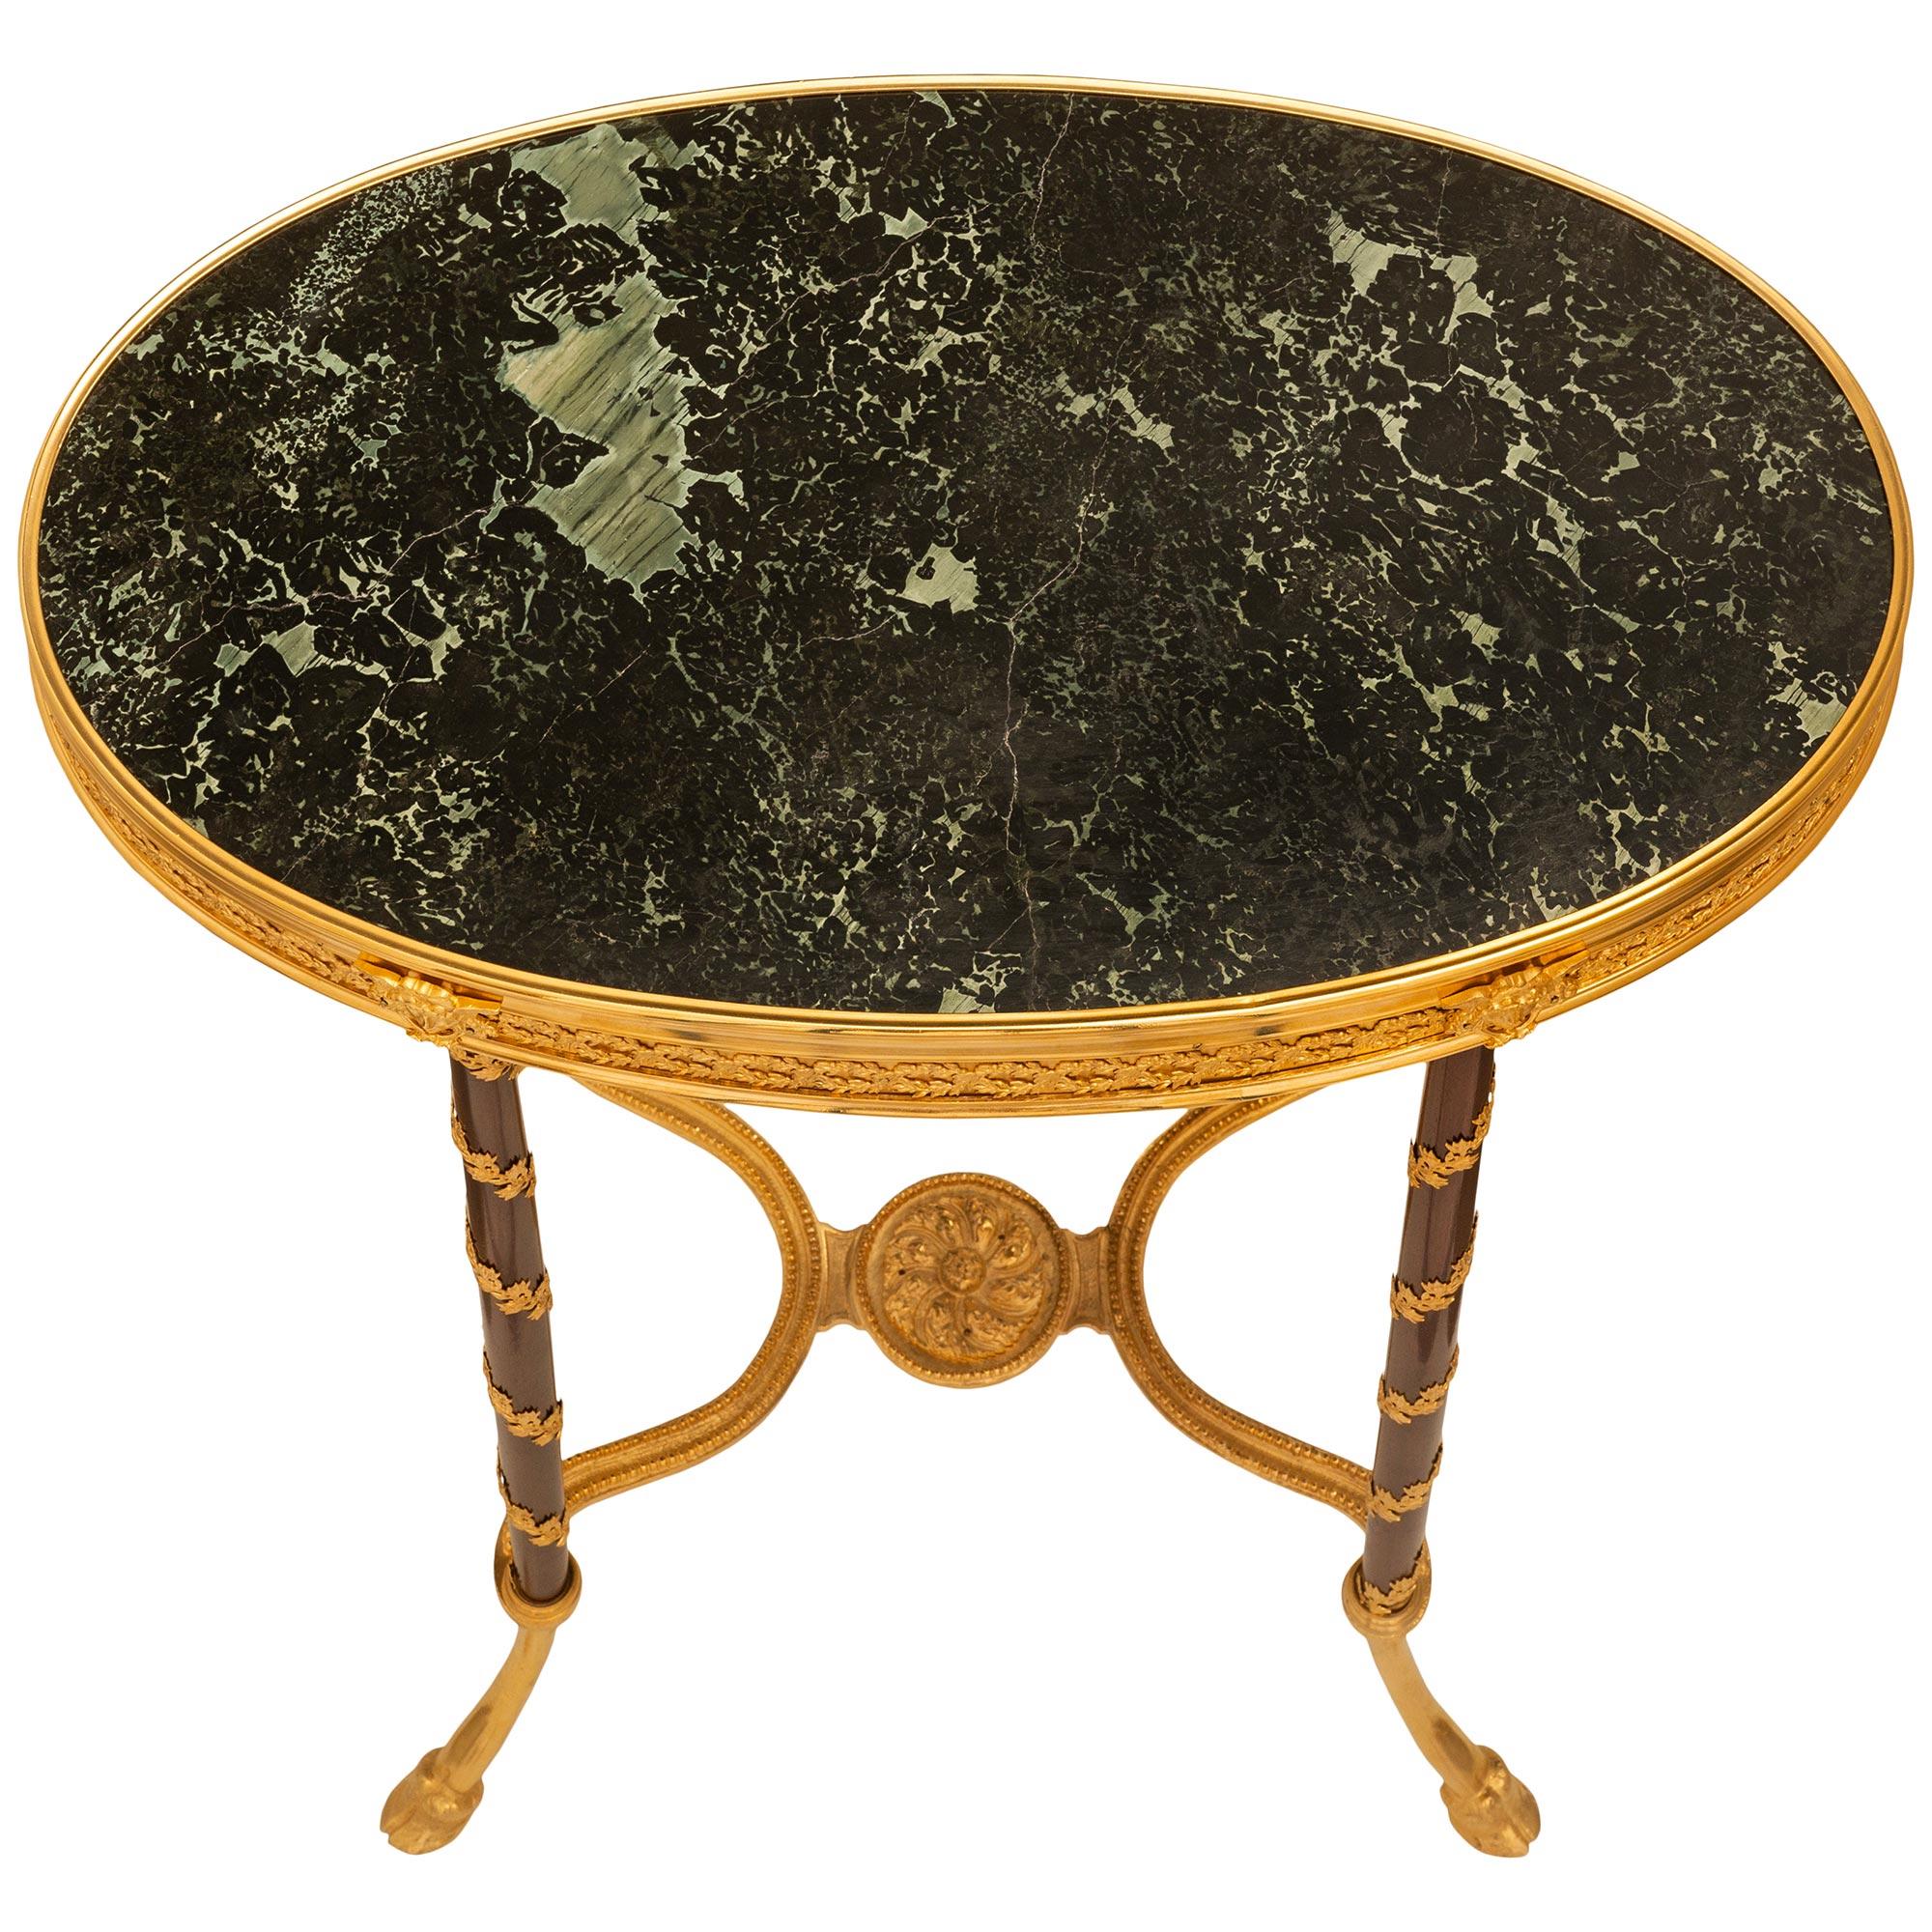 Eine sehr elegante Französisch 19. Jahrhundert Louis XVI st. Ormolu, Mahagoni und Marmor Tisch. Der ovale Beistelltisch steht auf vier C-förmig geschwungenen Ormolubeinen, die mit Huffüßen enden. Die vier Beine sind durch einen X-förmigen Keilrahmen